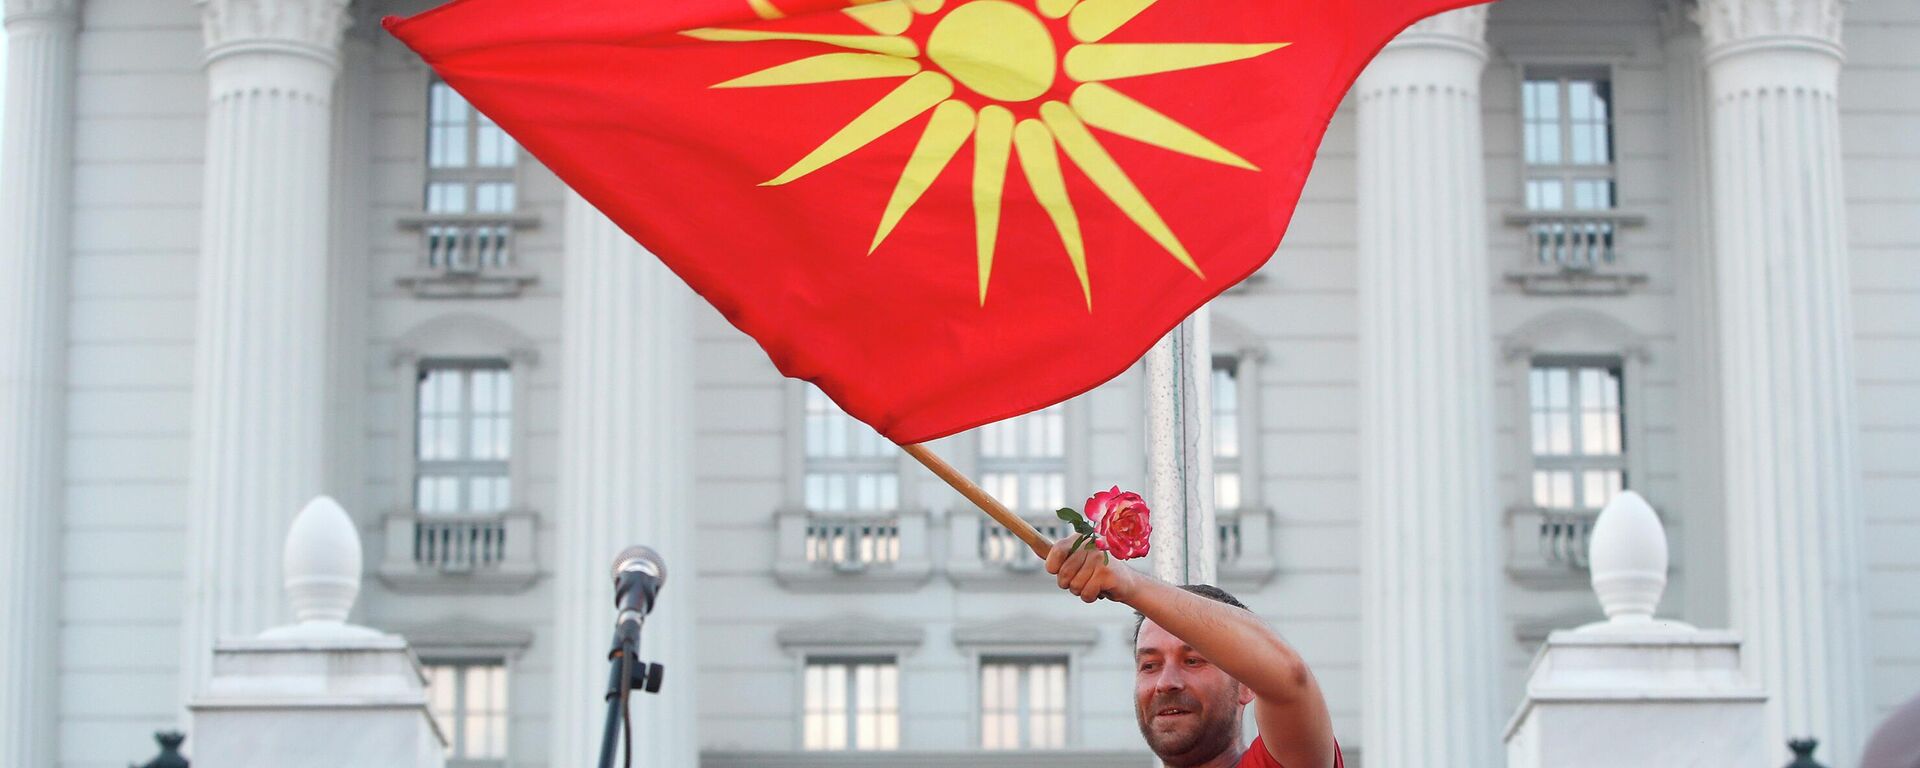 Демонстрант са старом националном заставом на антивладином протесту у Скопљу - Sputnik Србија, 1920, 13.07.2022